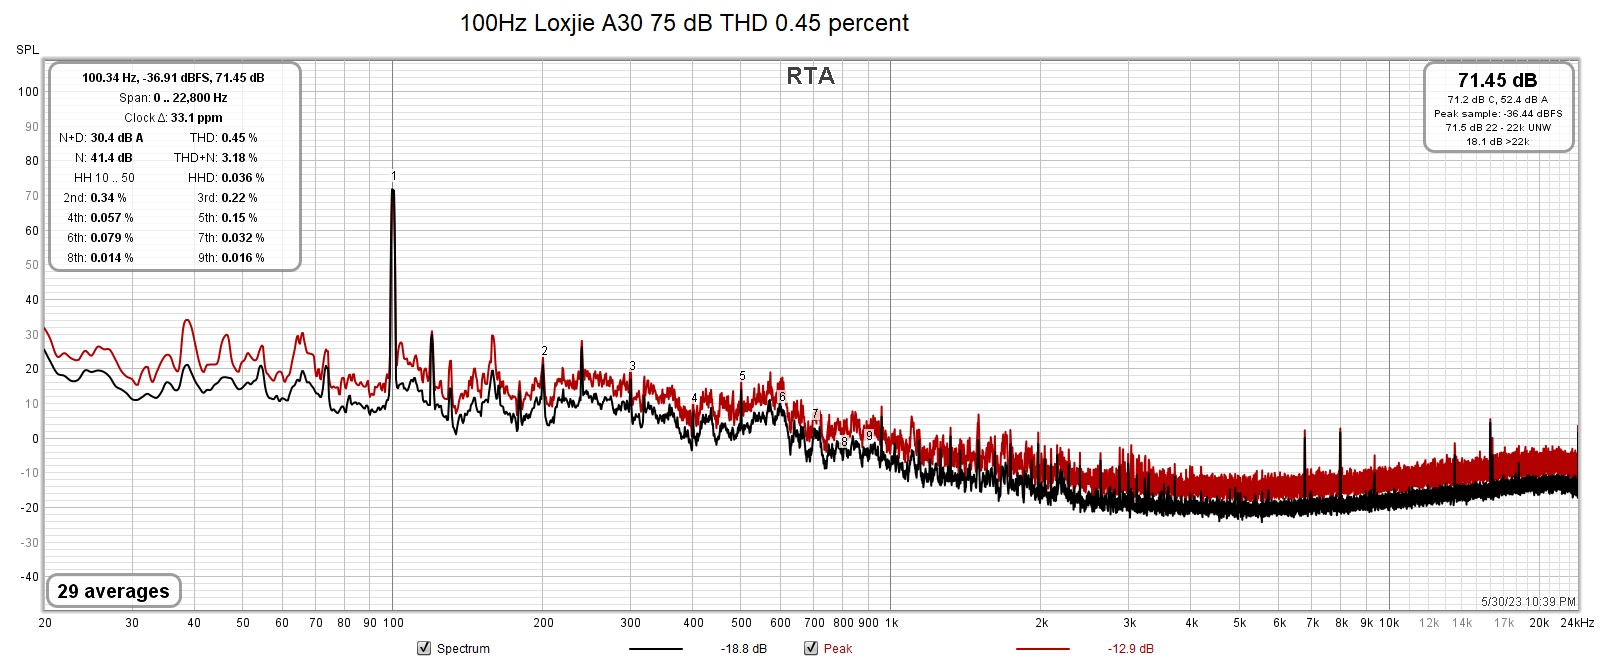 100Hz Loxjie A30 75 dB THD 0.45 percent.jpg